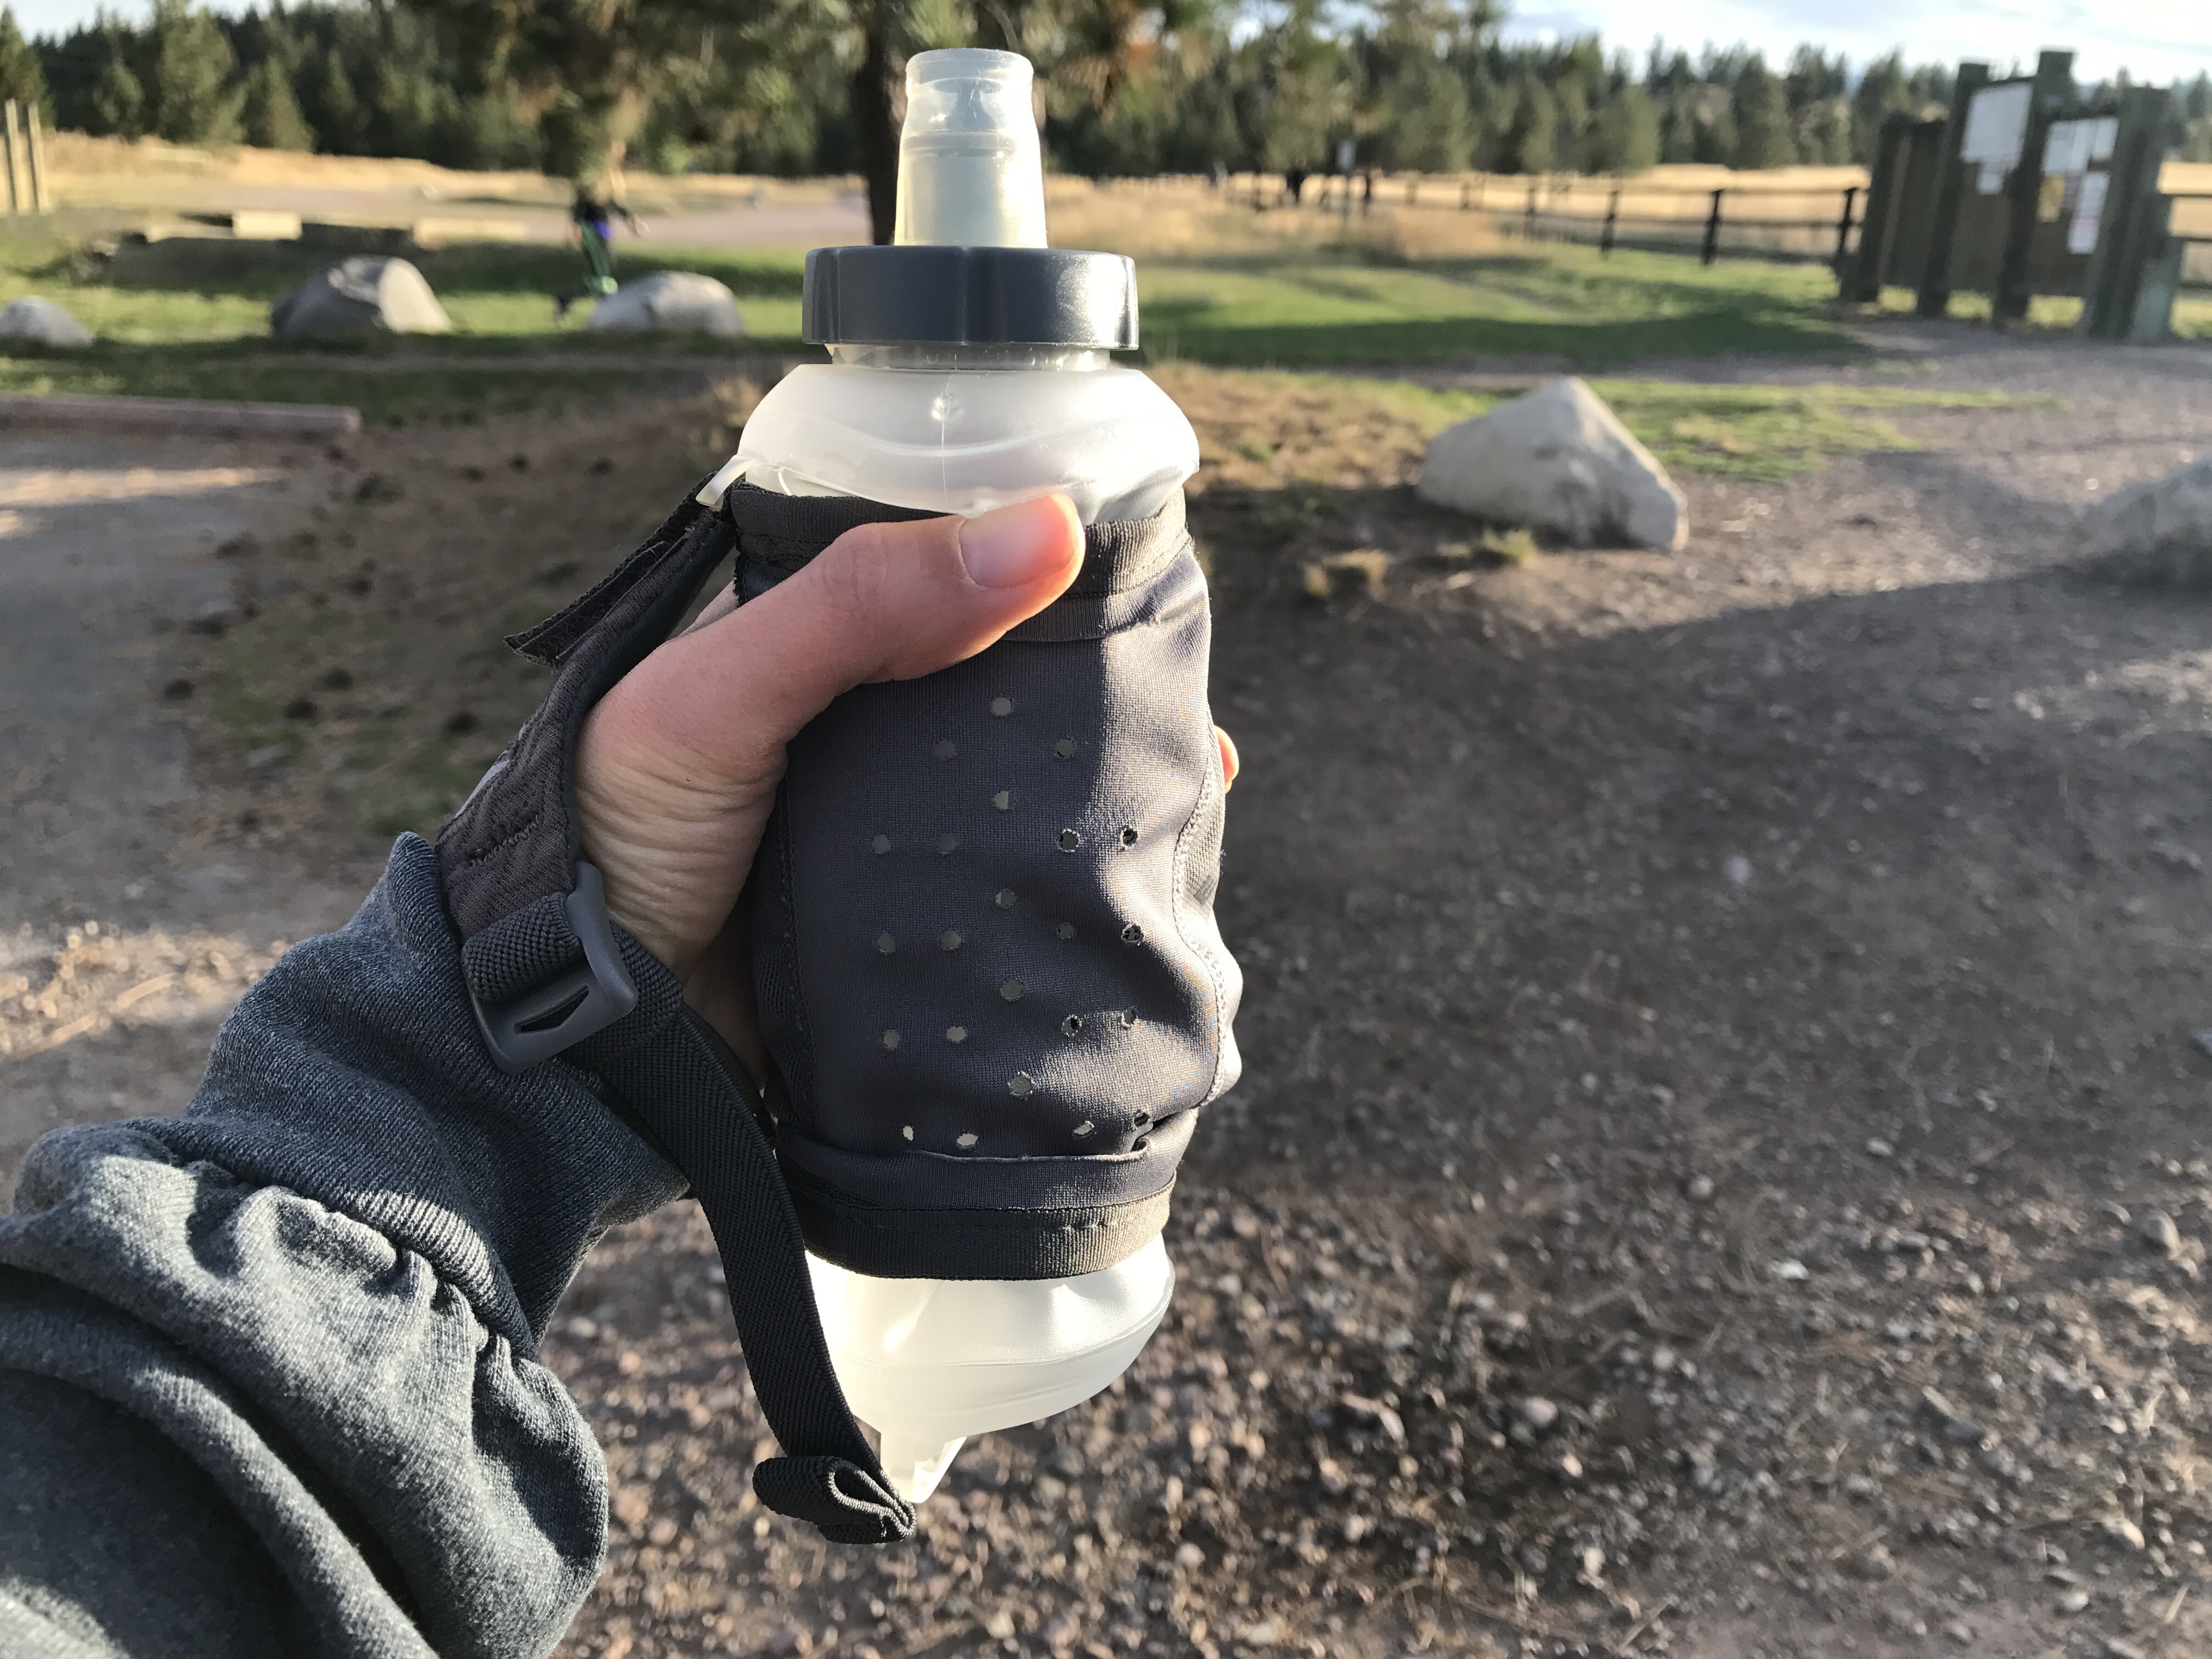 Nathan SpeedDraw Plus Insulated Handheld Water Bottle - 18 fl. oz